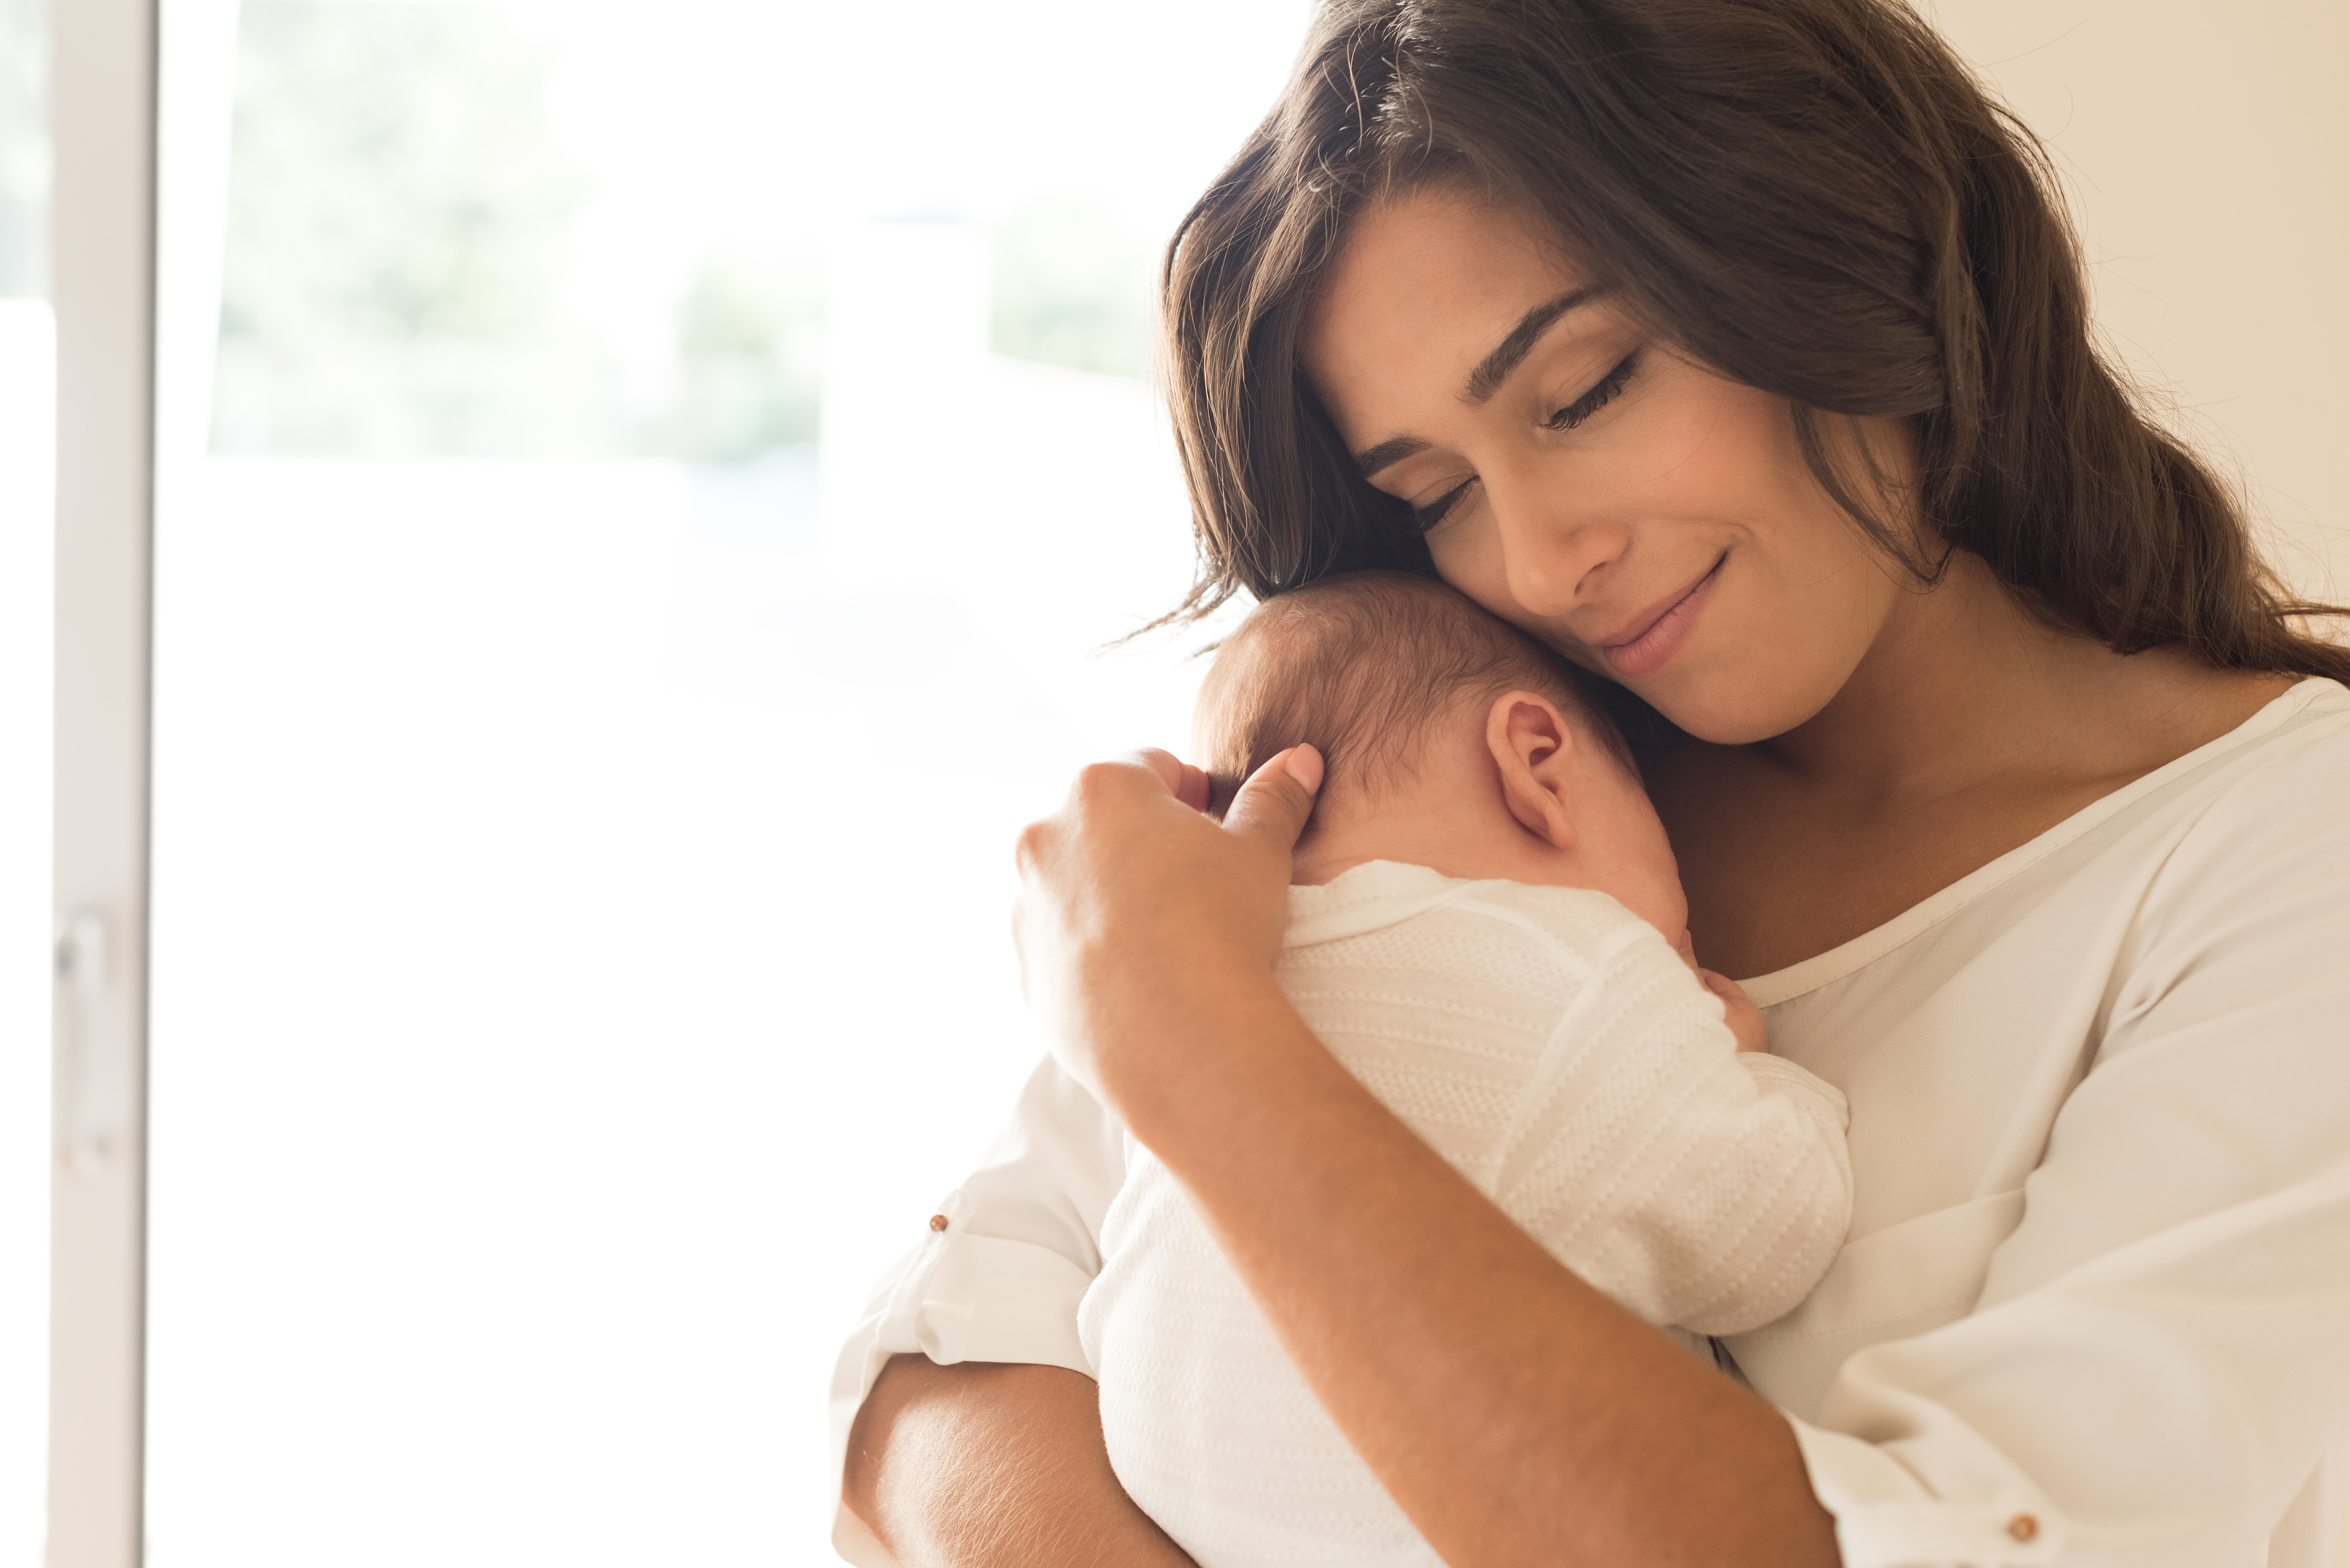 Eine Frau und ihr Kind | Quelle: Shutterstock